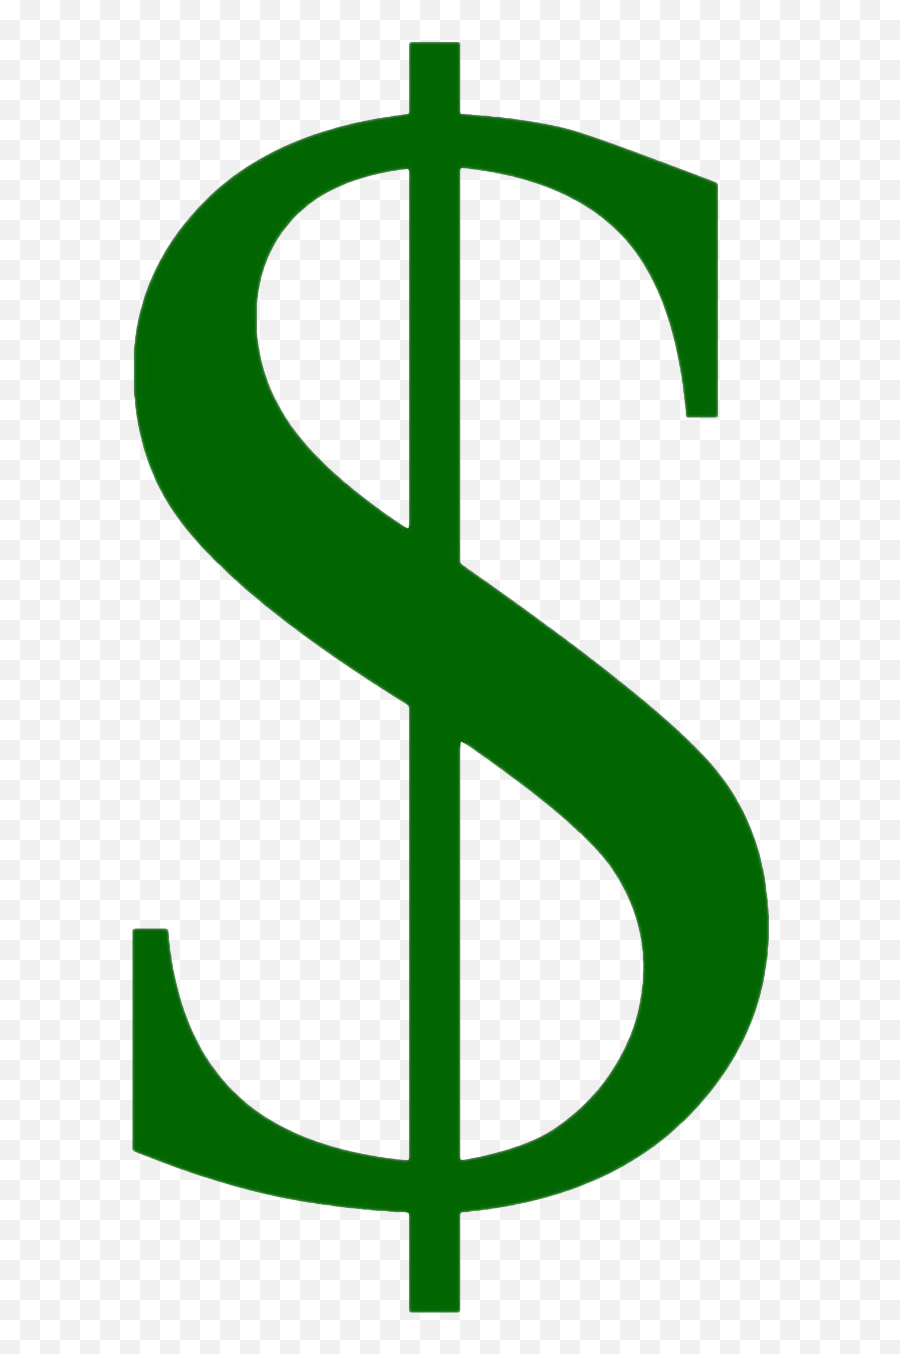 Dollar Sign Png Images Transparent Free Download Pngmartcom Emoji,Dollar Sign Clipart Free